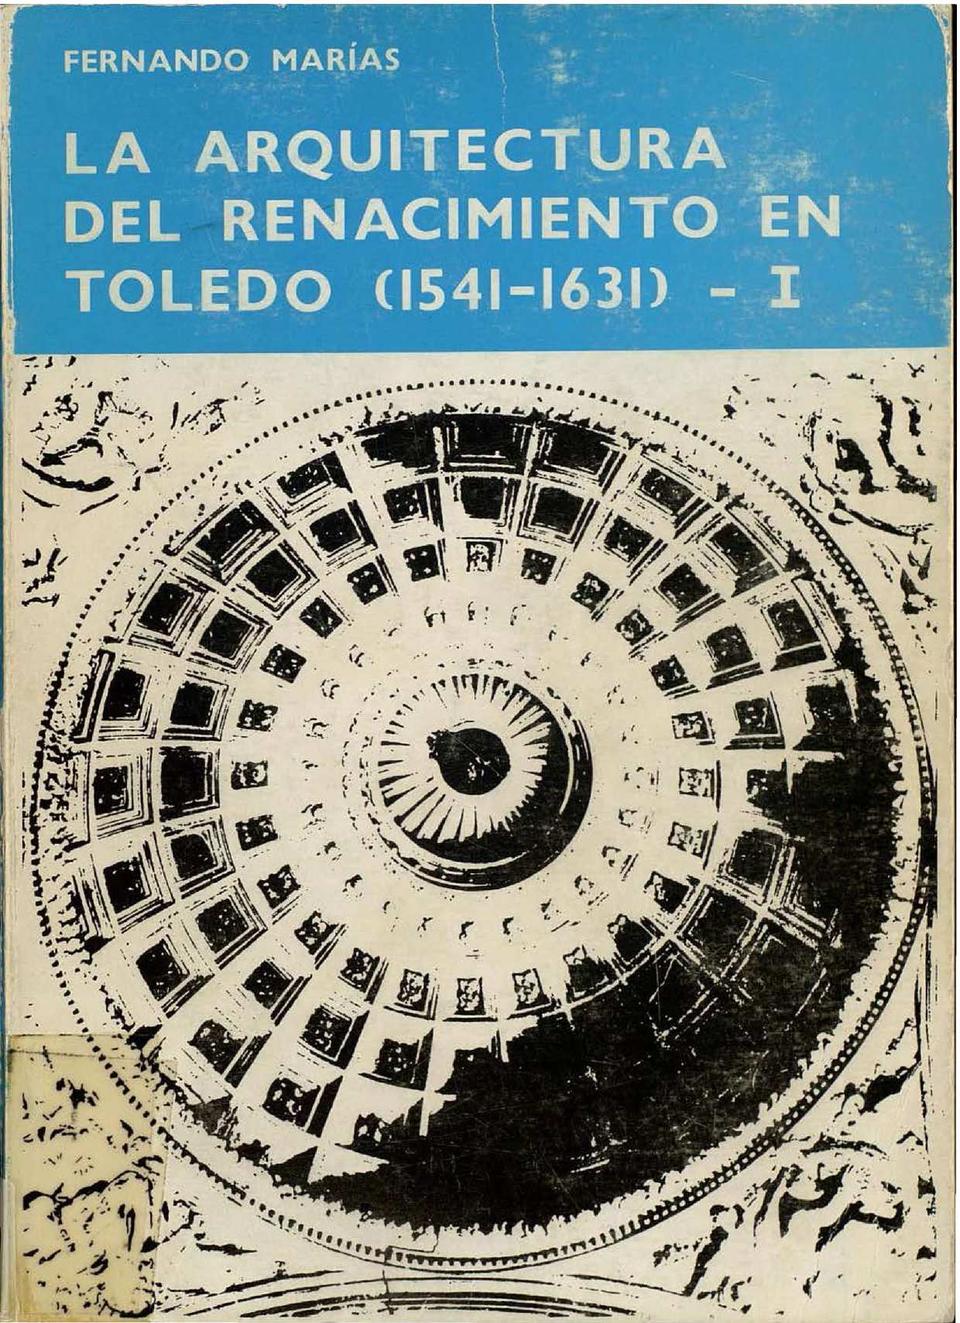 La Arquitectura del Renacimiento en Toledo (1541-1631) / Fernando Marías.-. [Monografía]